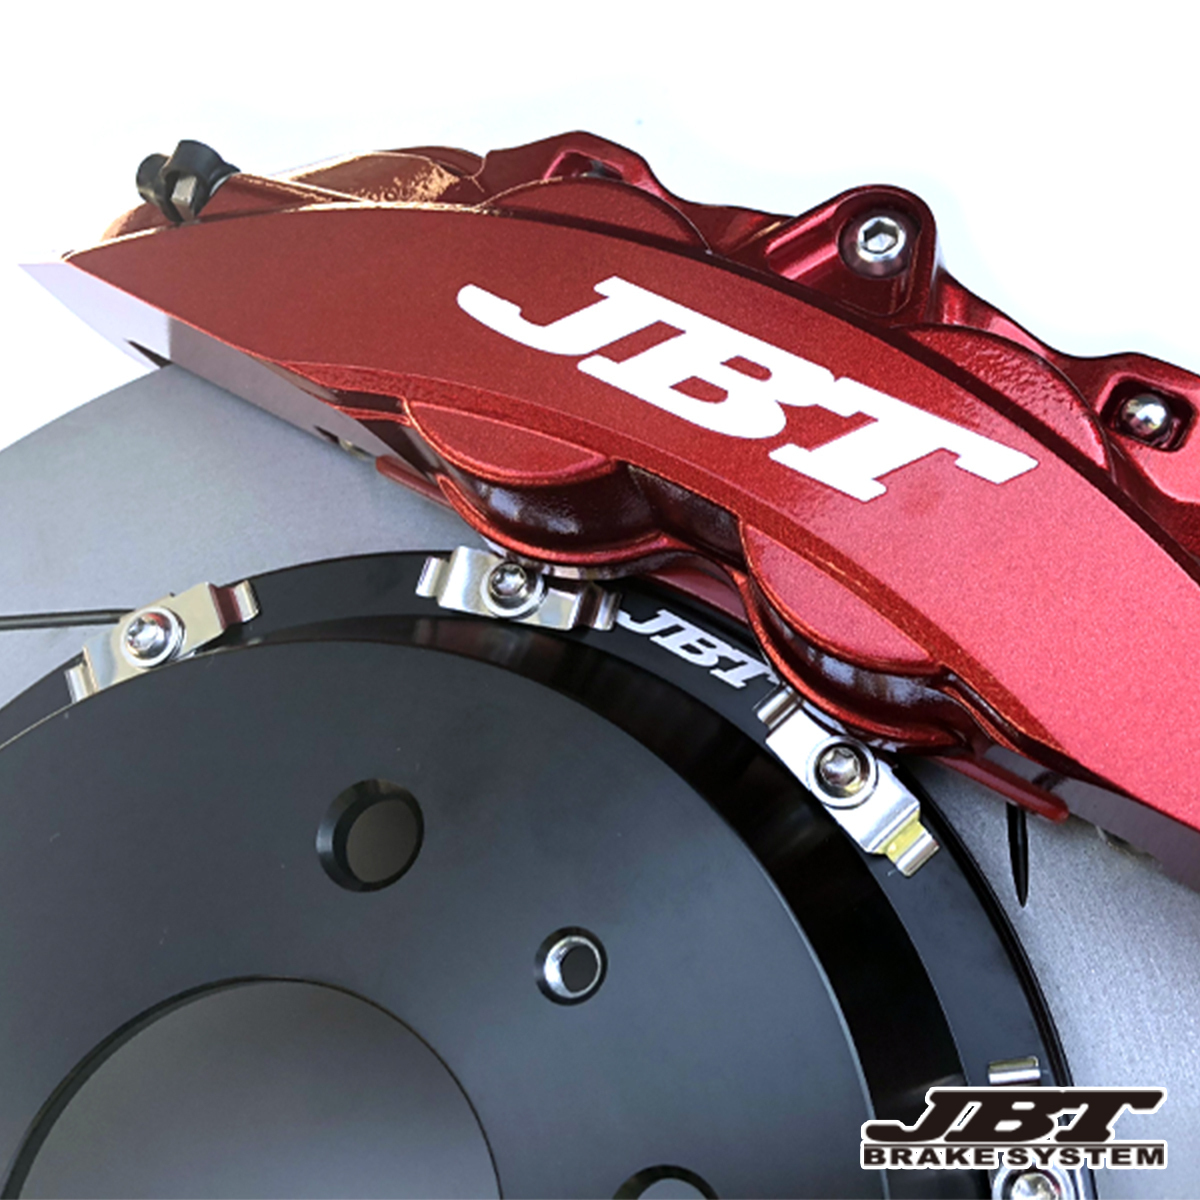 JBT суппорт тормоза 4POT(SP4P)+2 деталь 355mm разрез & просверленный ротор :BMW*F31 серия :3 серии : все 11 цвет : передний комплект 